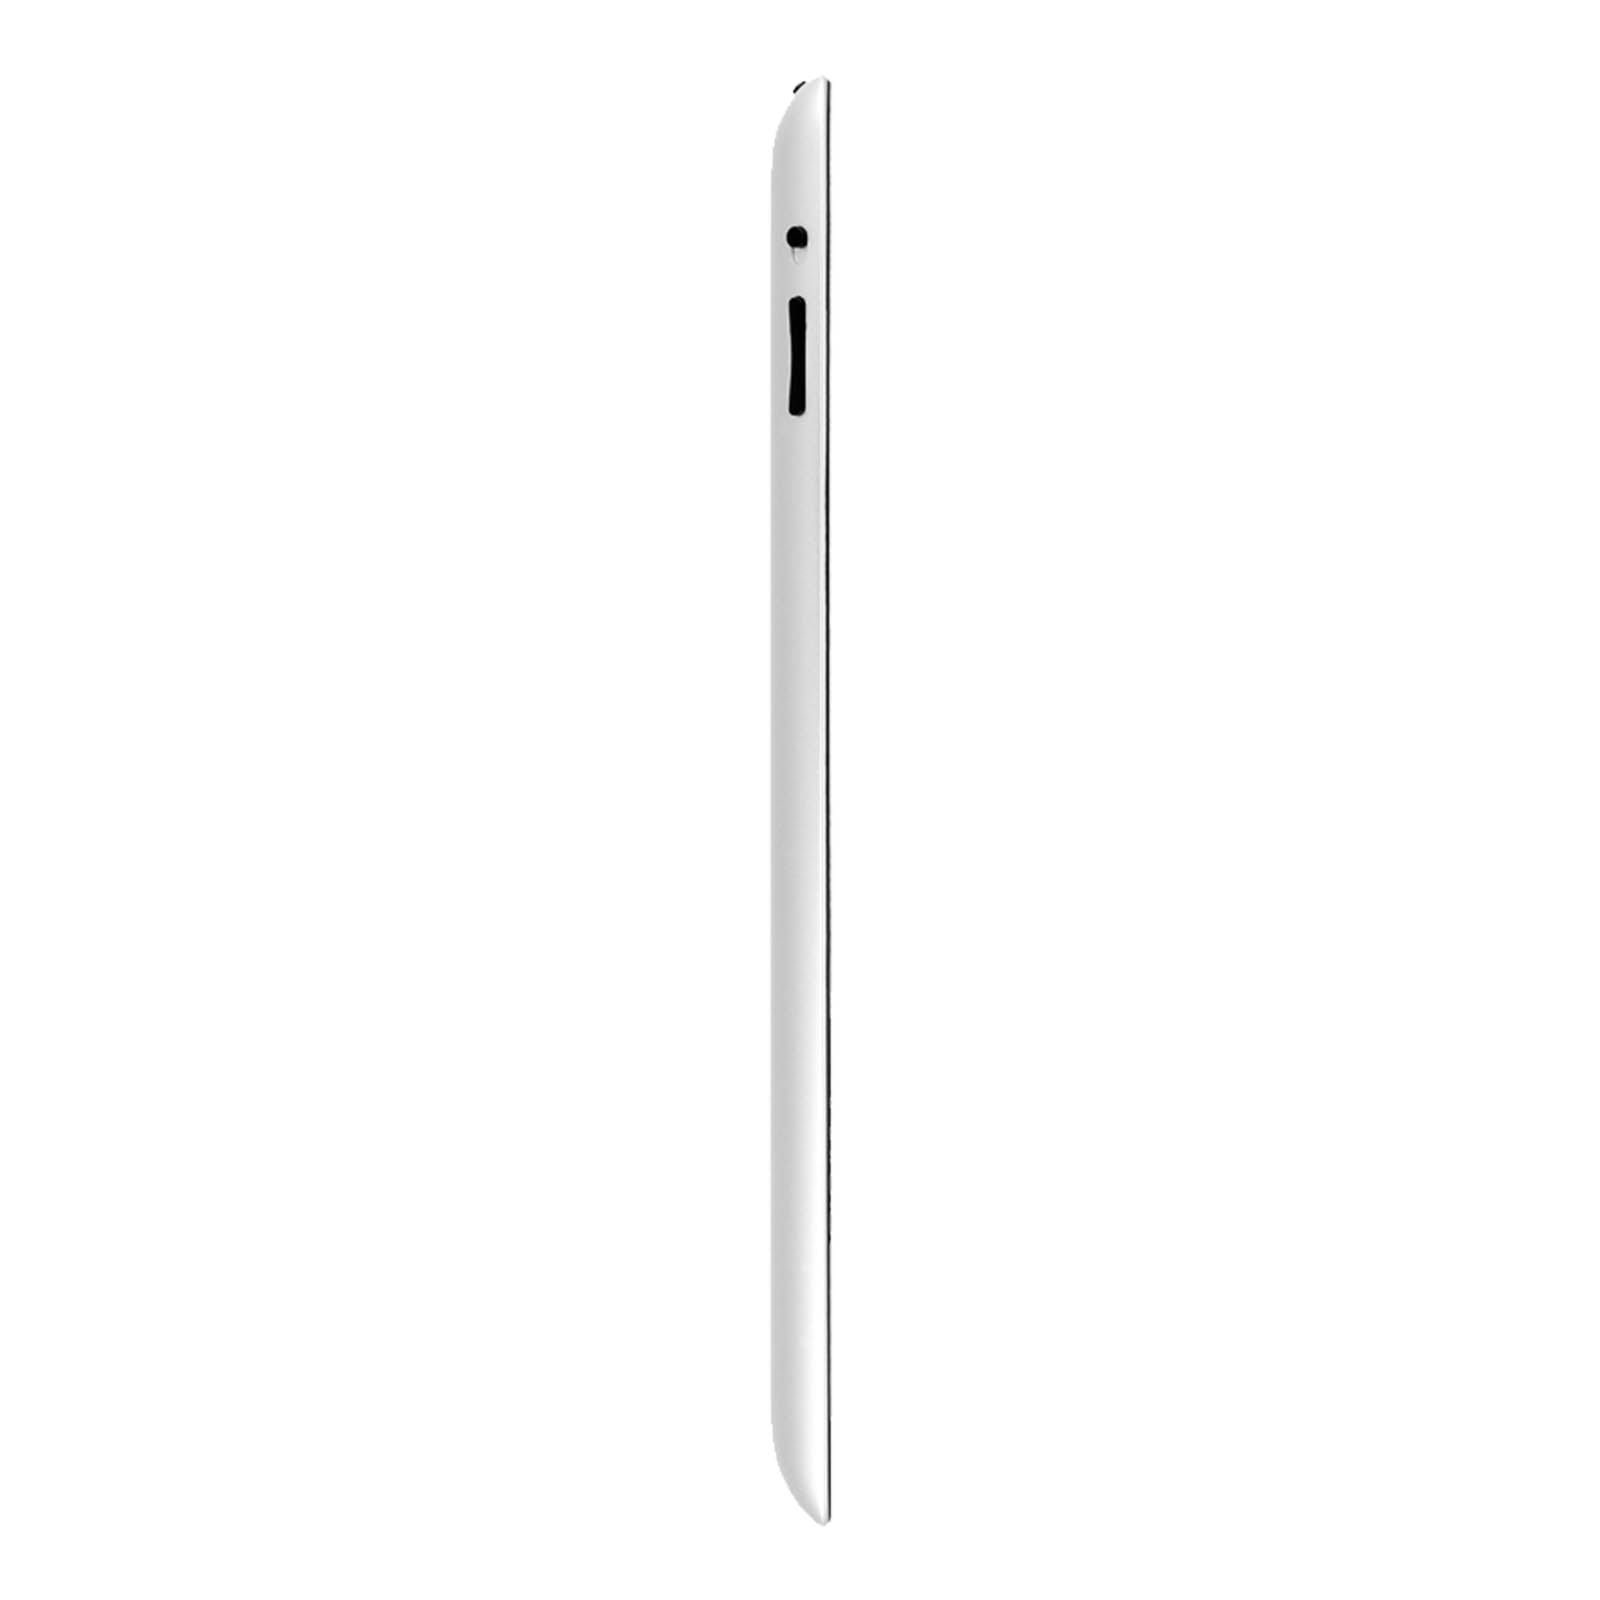 Apple iPad 3 64GB Black Good - Unlocked